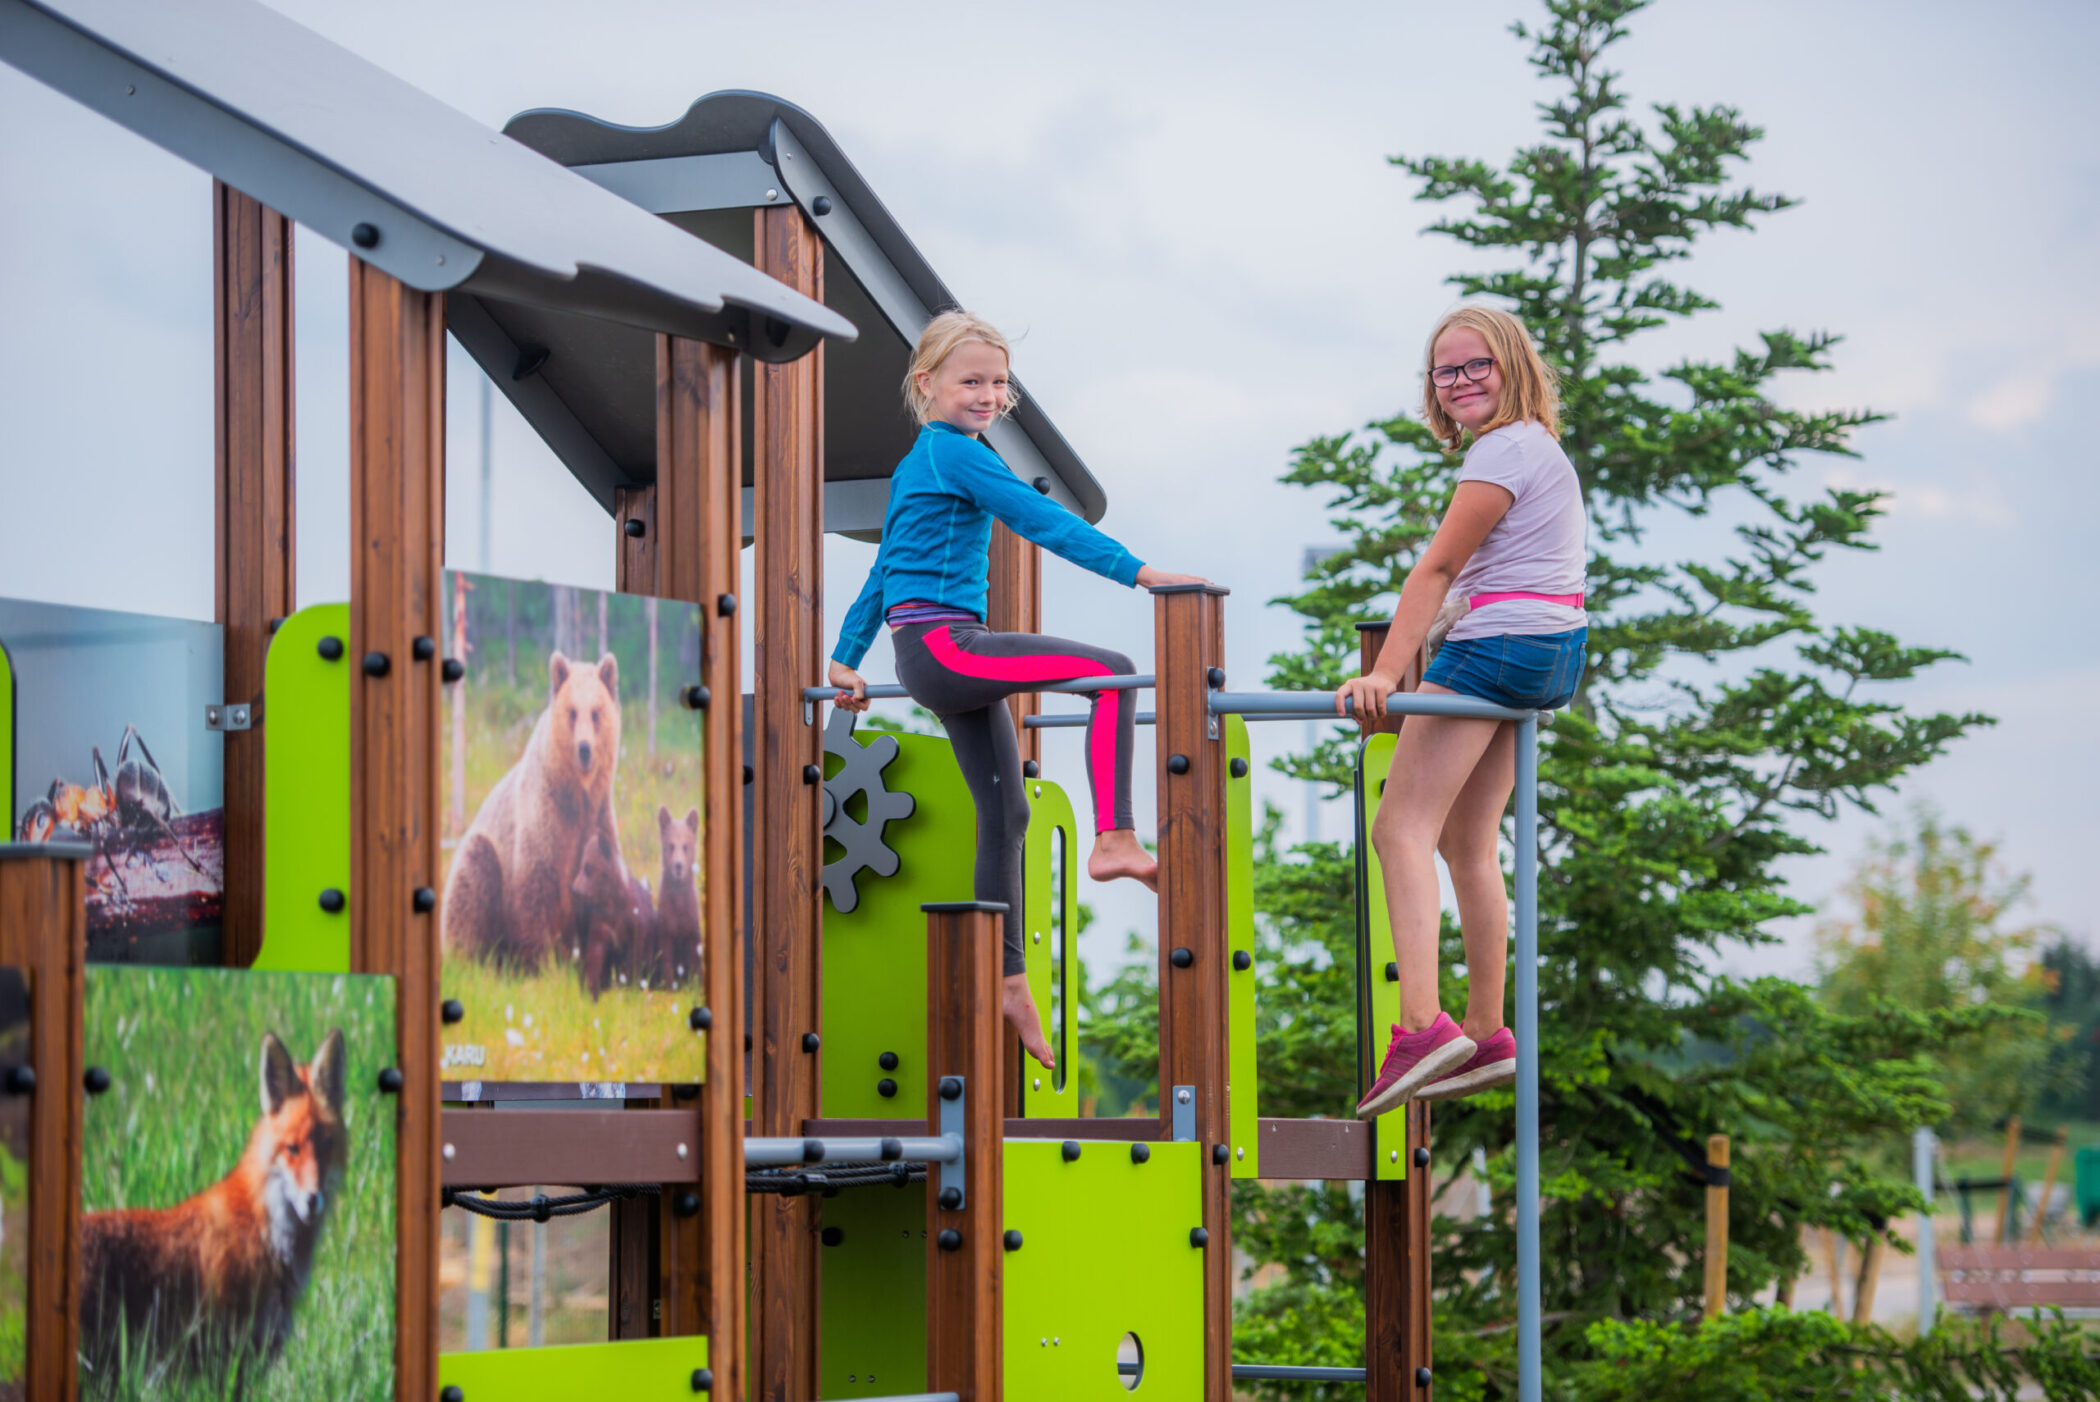 Playground in Tõrvandi, Estonia